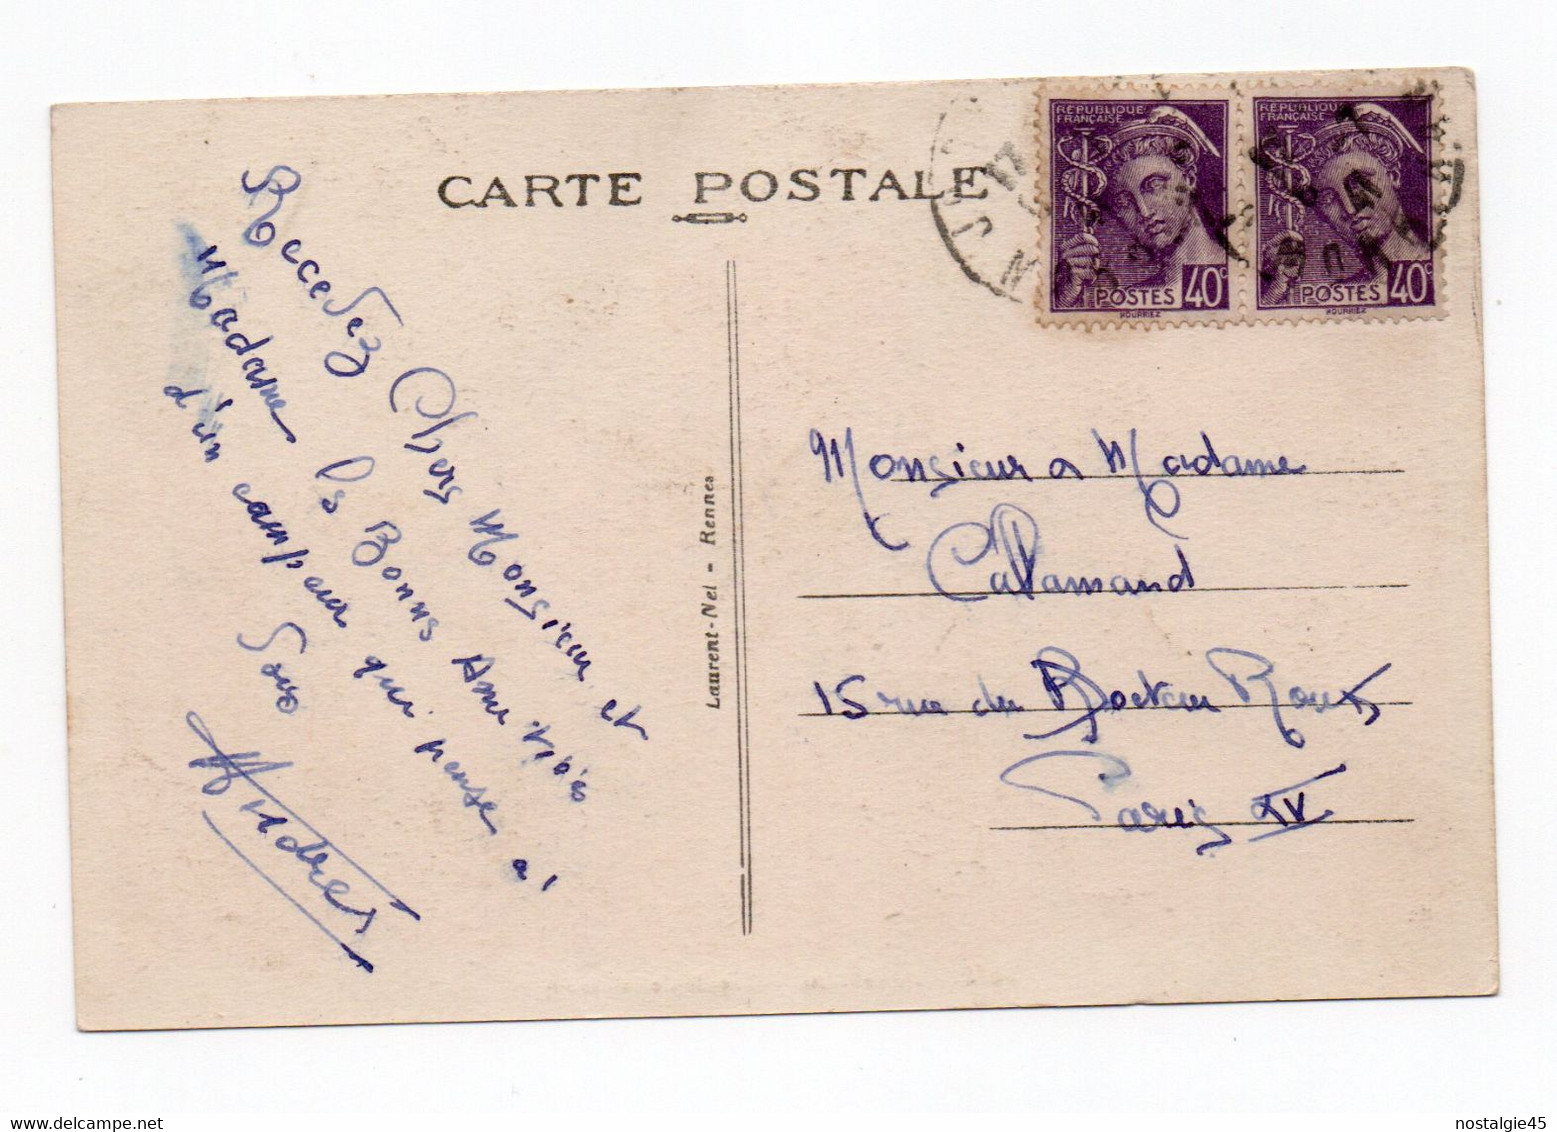 CPSM 4315 Laurent Nel  Josselin  Façade De La Basilique Bloc 2 Timbres Mercure Violet 40c Cachet 1941 - Josselin